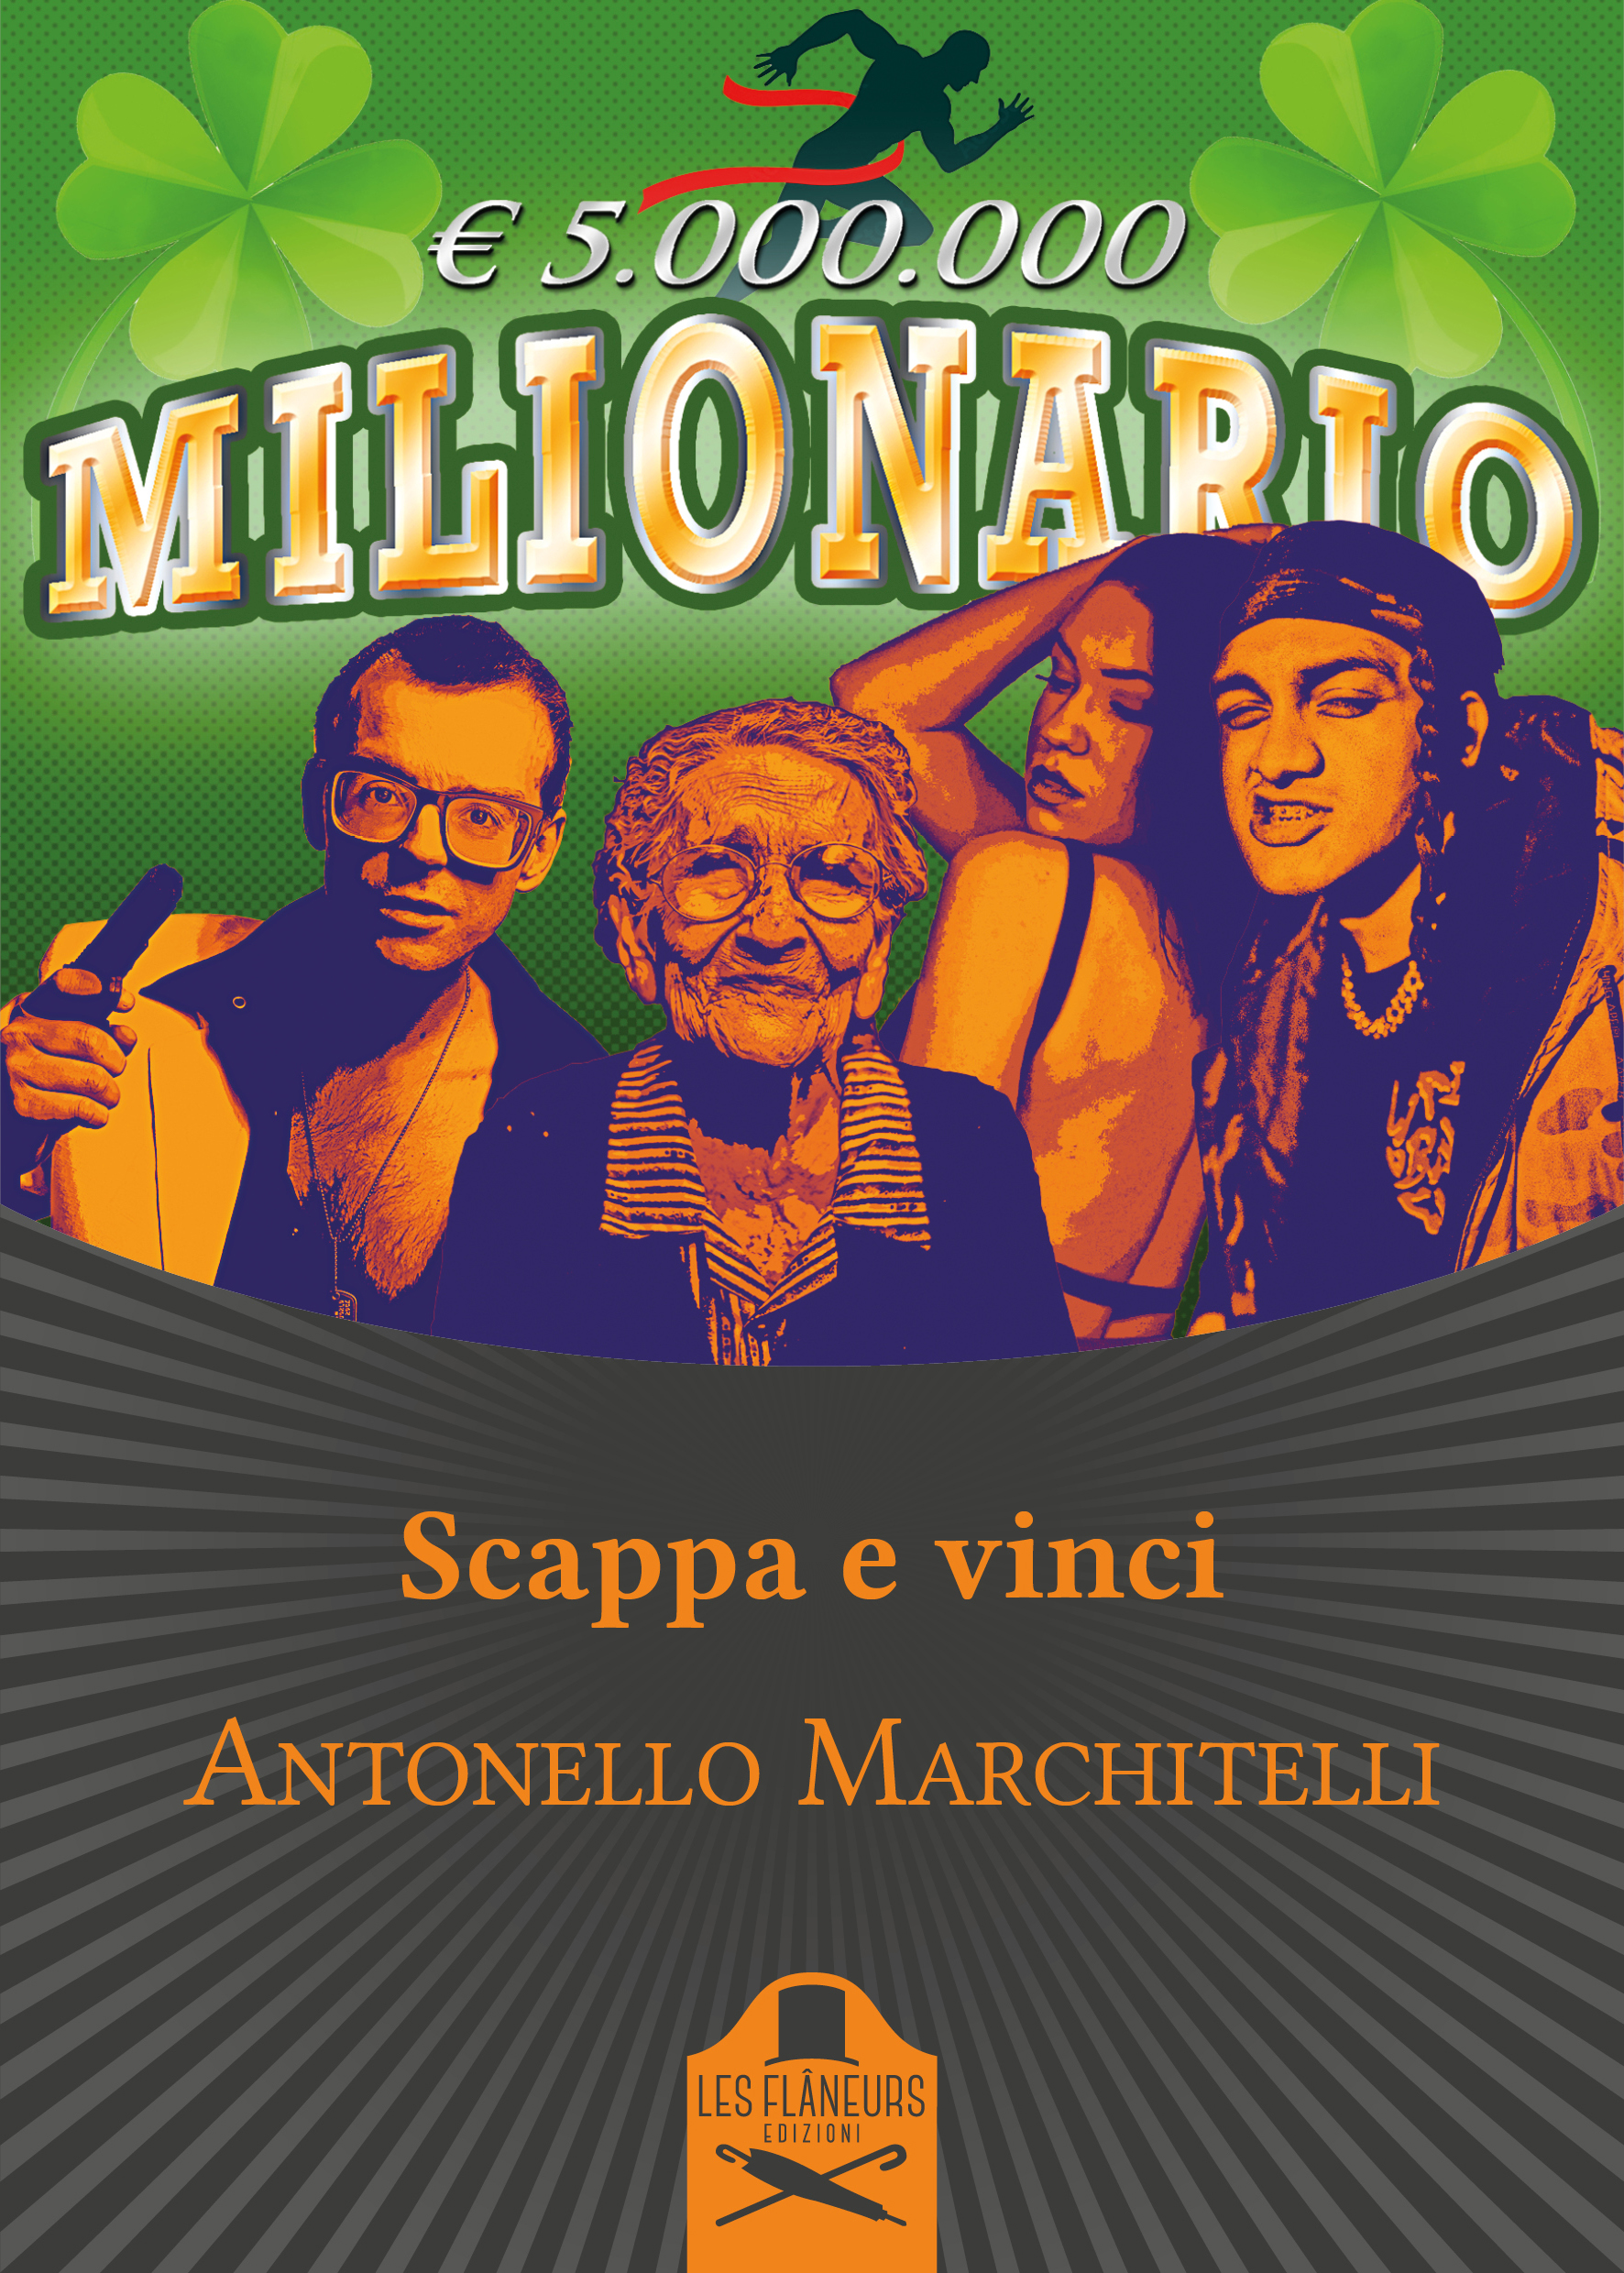 Antonello Marchitelli presenta il romanzo “Scappa e vinci”